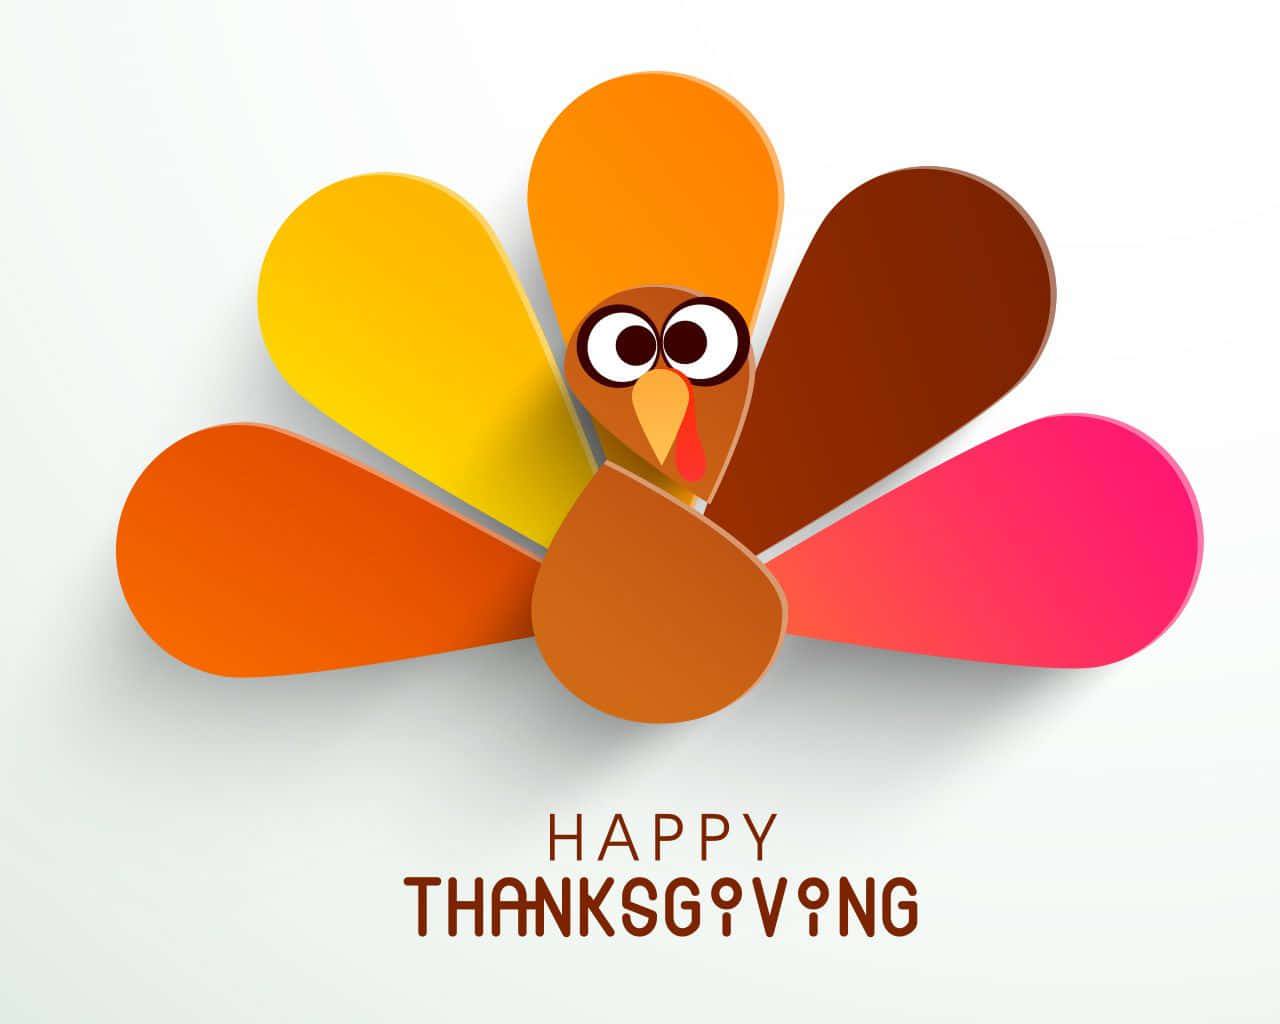 Önskardig Och Din Familj En Mycket Glad Thanksgiving! Wallpaper